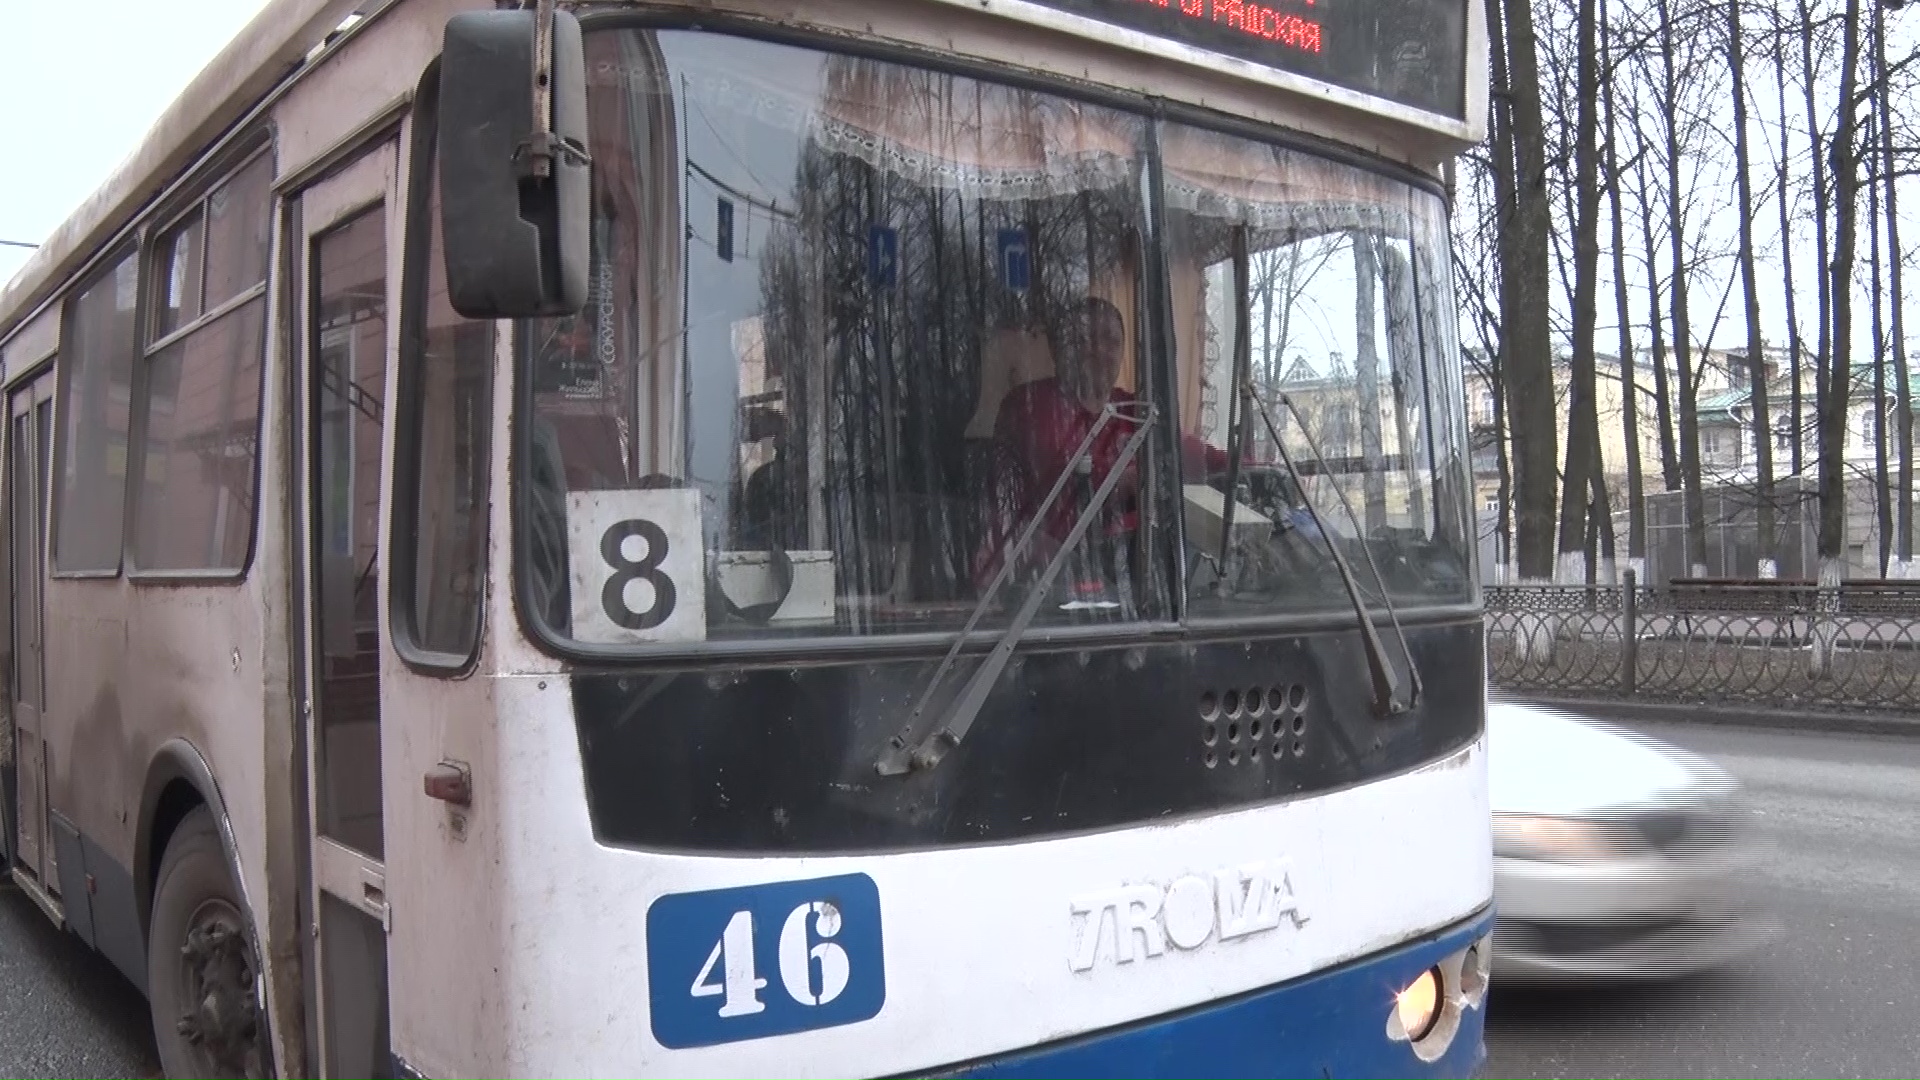 Отменить нельзя, даже временно: в мэрии Ярославля обсудили судьбу восьмого троллейбуса